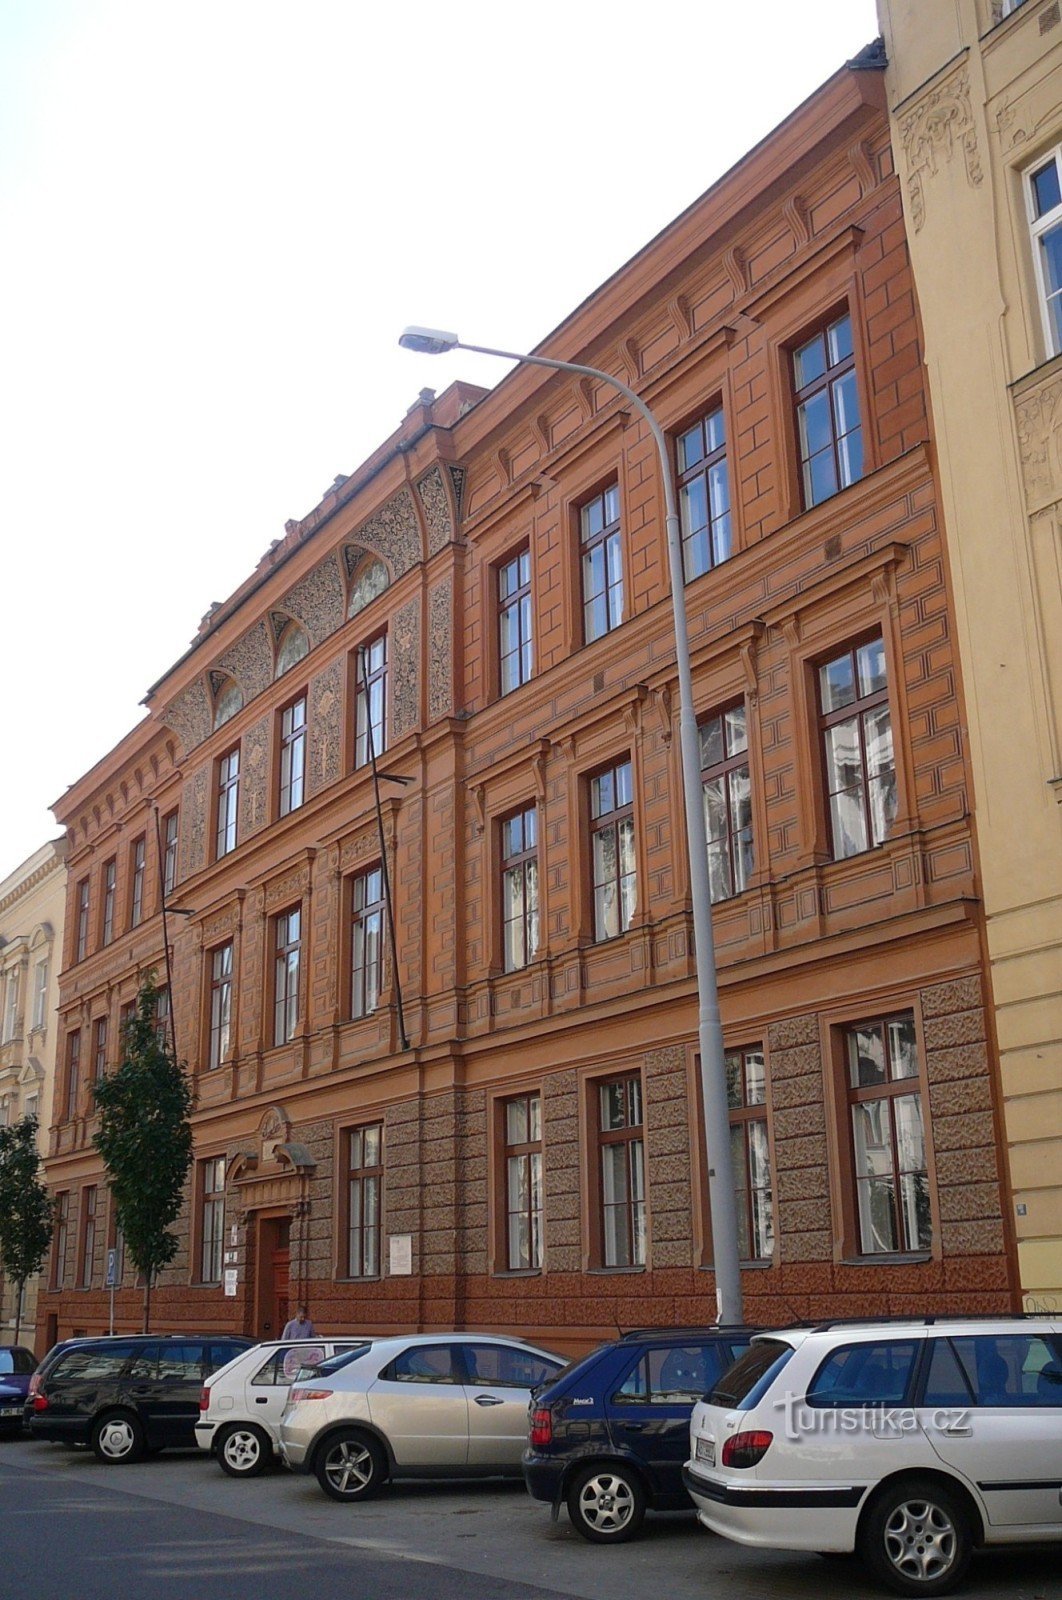 Escuela en Jaselská 7 del arquitecto Antonín Terbich